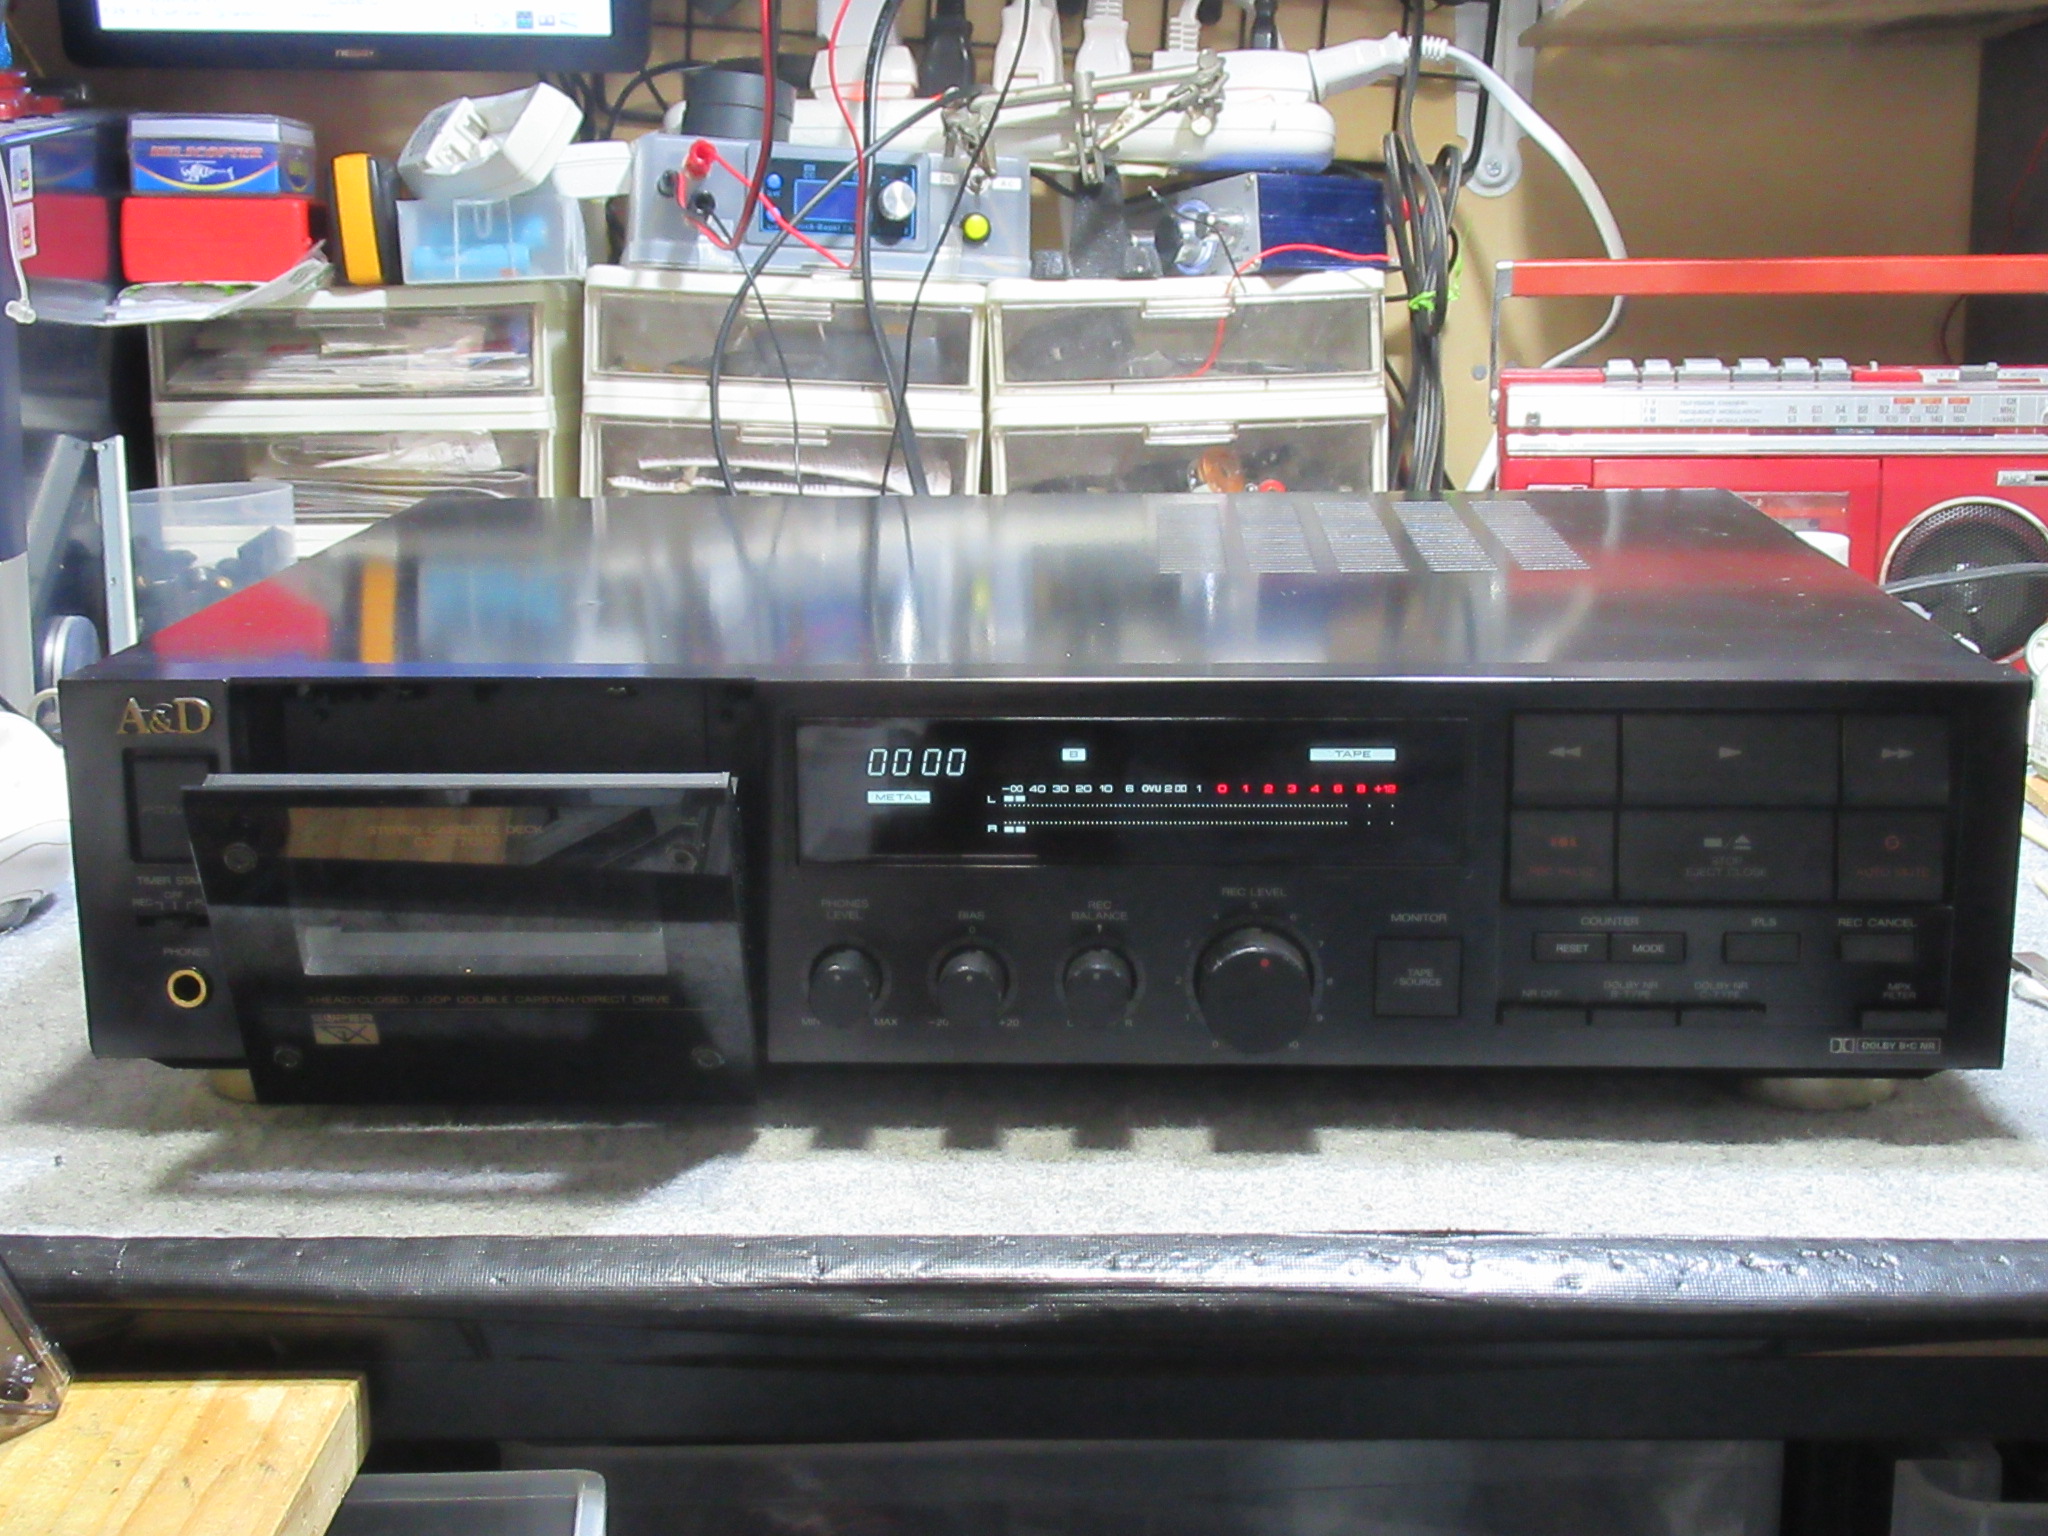 A&D GX-Z7000 リフレッシュメニュー – Audiolife － Enjoy your audio ...